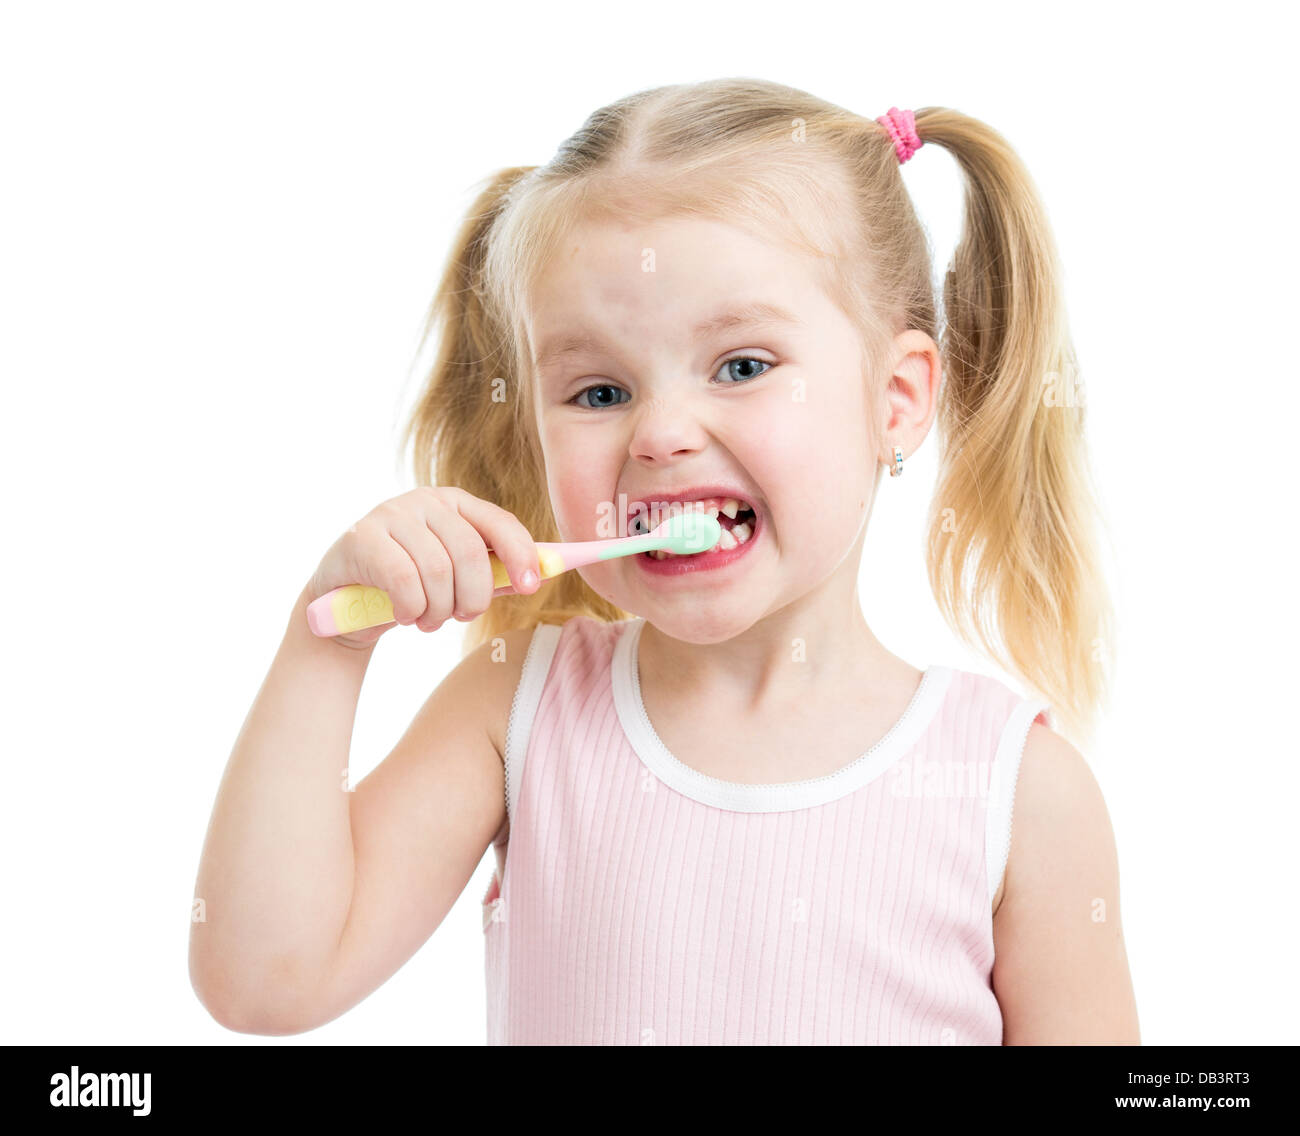 child girl brushing teeth isolated on white Stock Photo